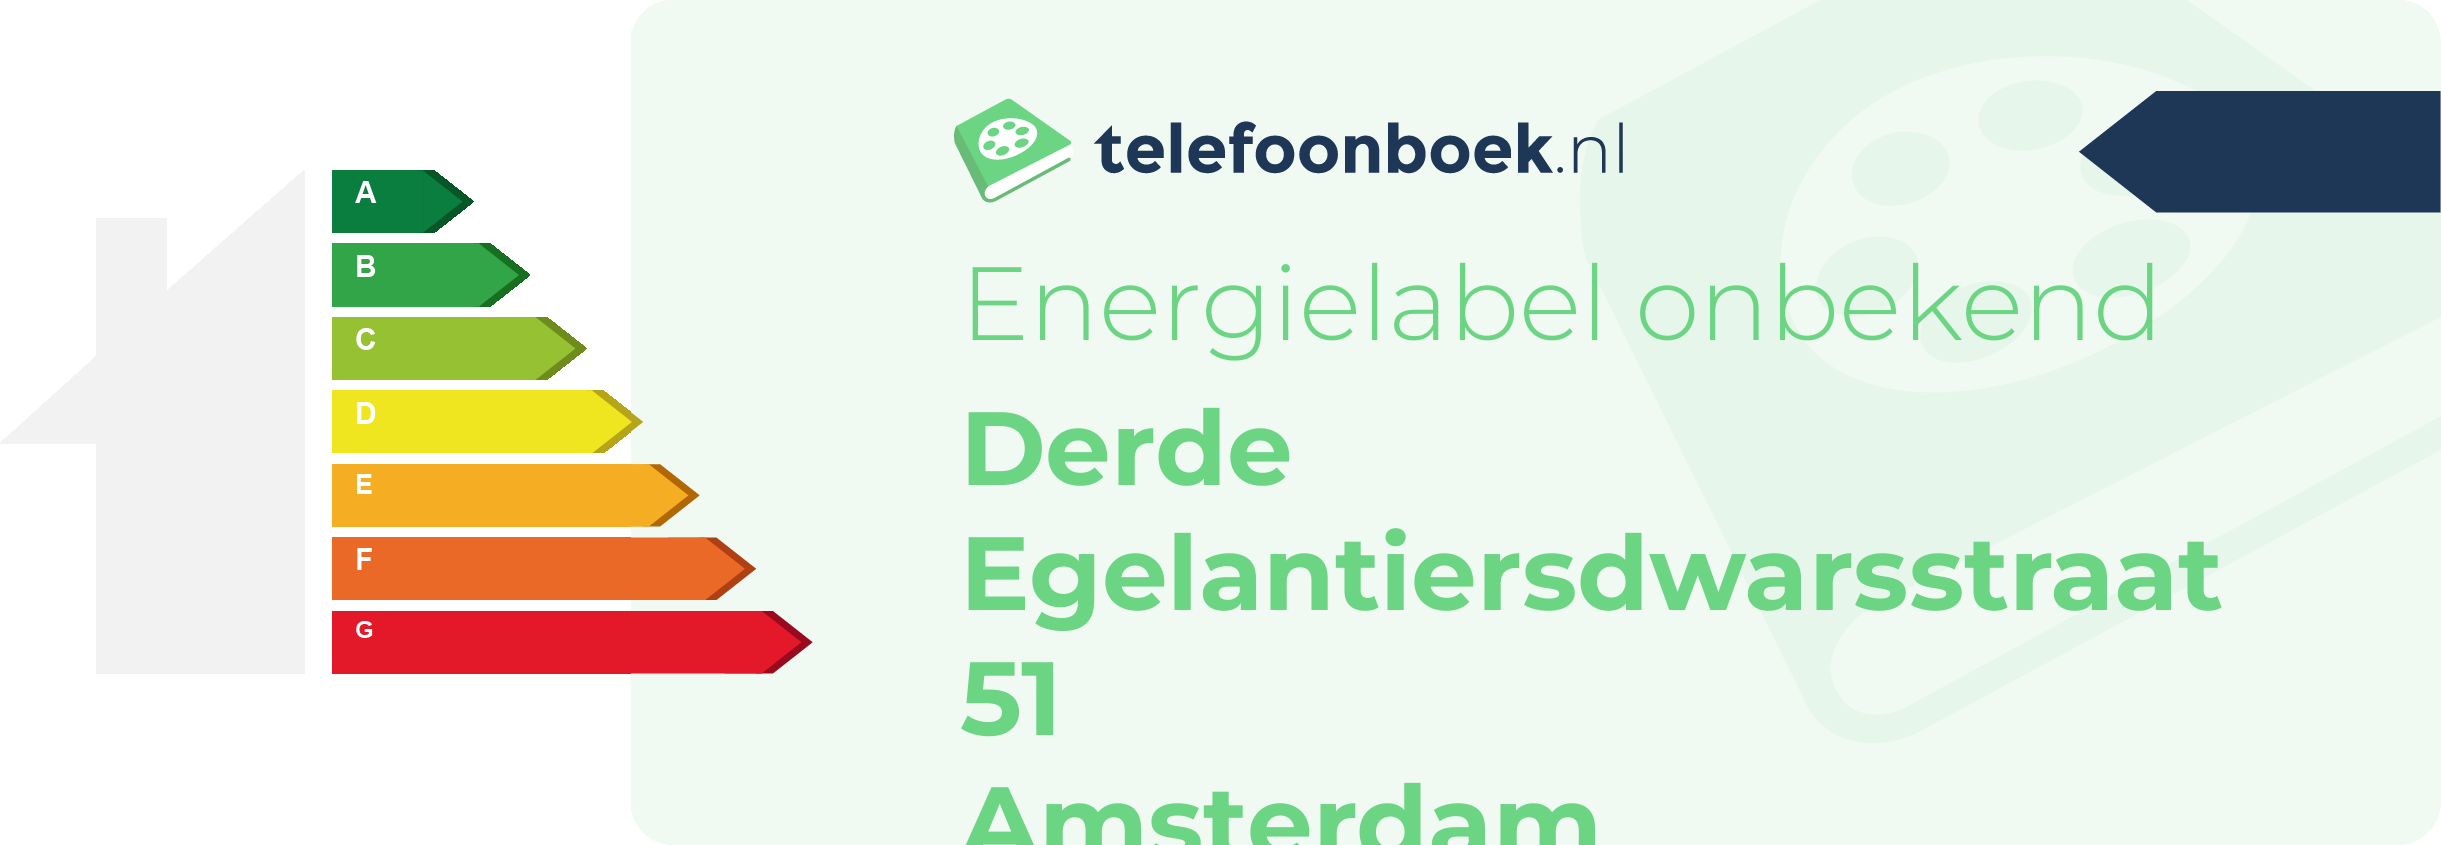 Energielabel Derde Egelantiersdwarsstraat 51 Amsterdam